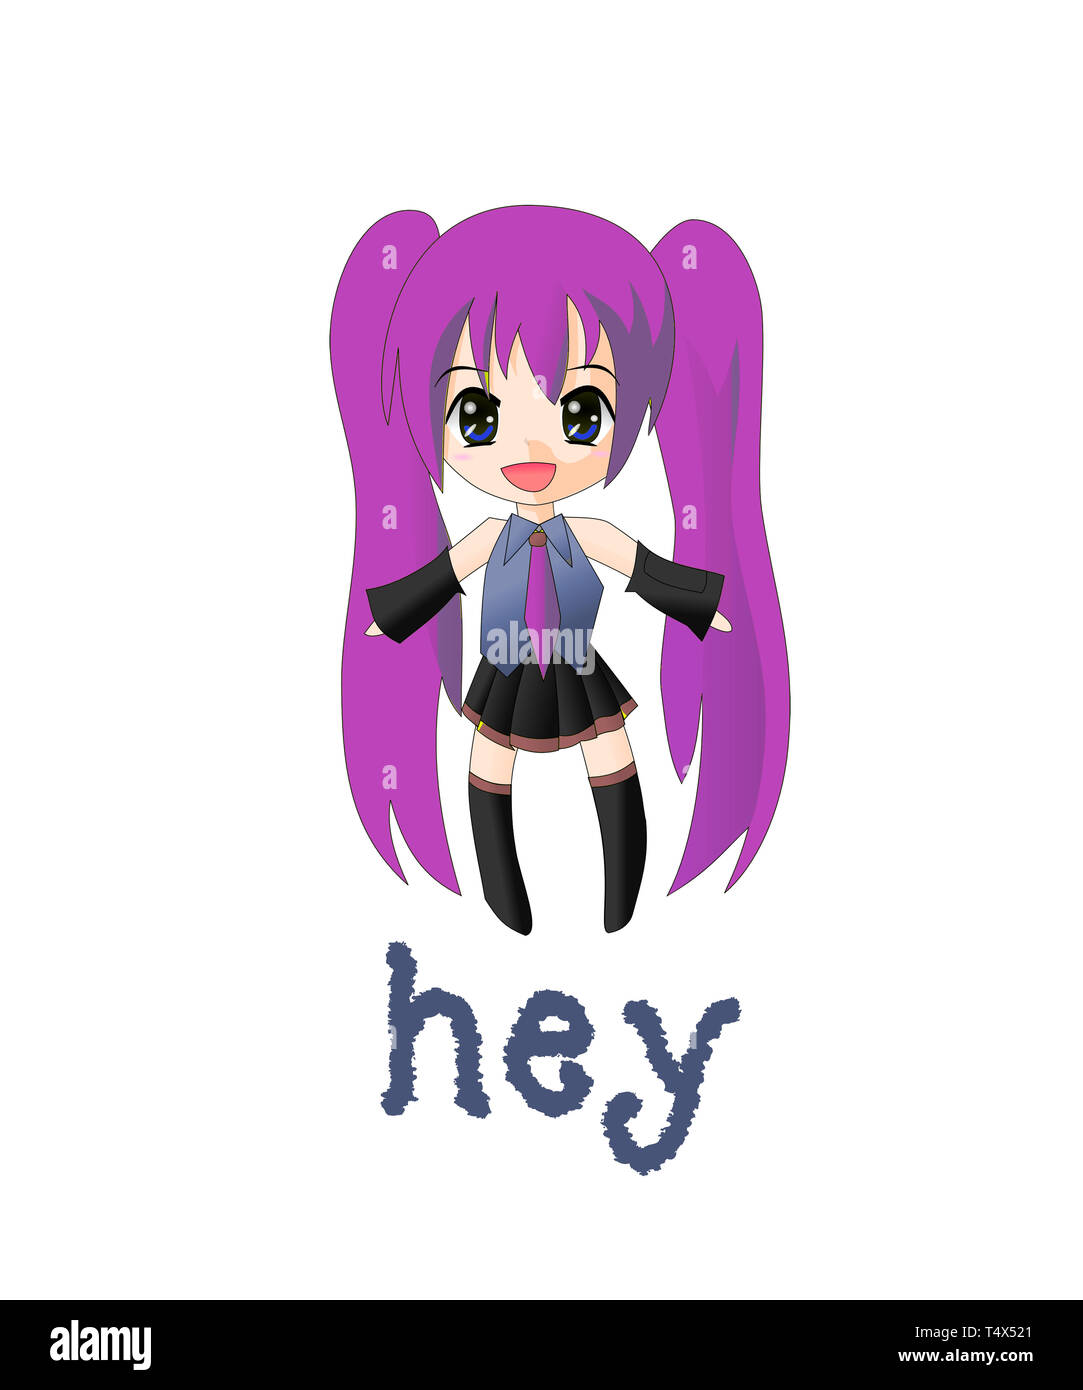 Anime chica saludo hola, un pop diciendo hola. Cartoon chica tiene largo  cabello púrpura en pig tails y botas altas en esta ilustración gráfica  Fotografía de stock - Alamy